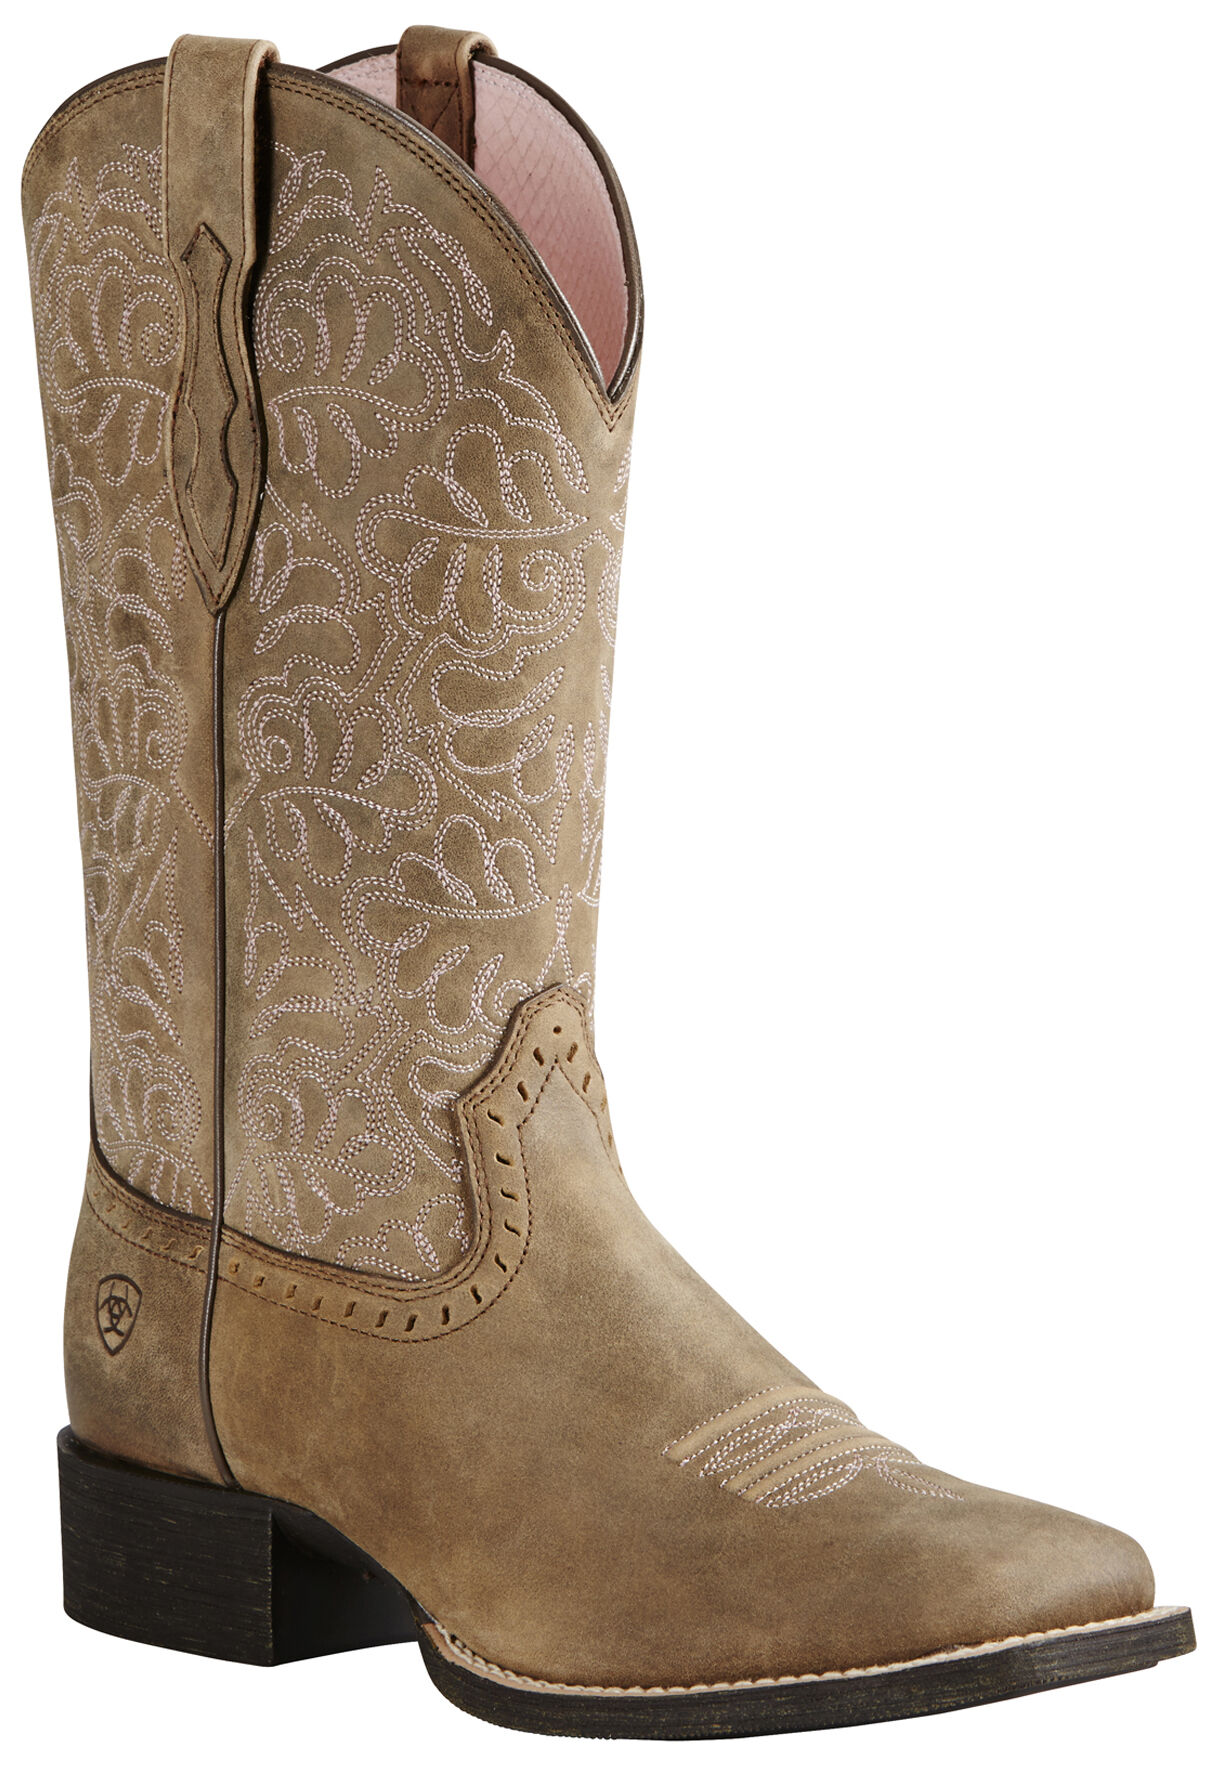 women's western boots size 11 wide